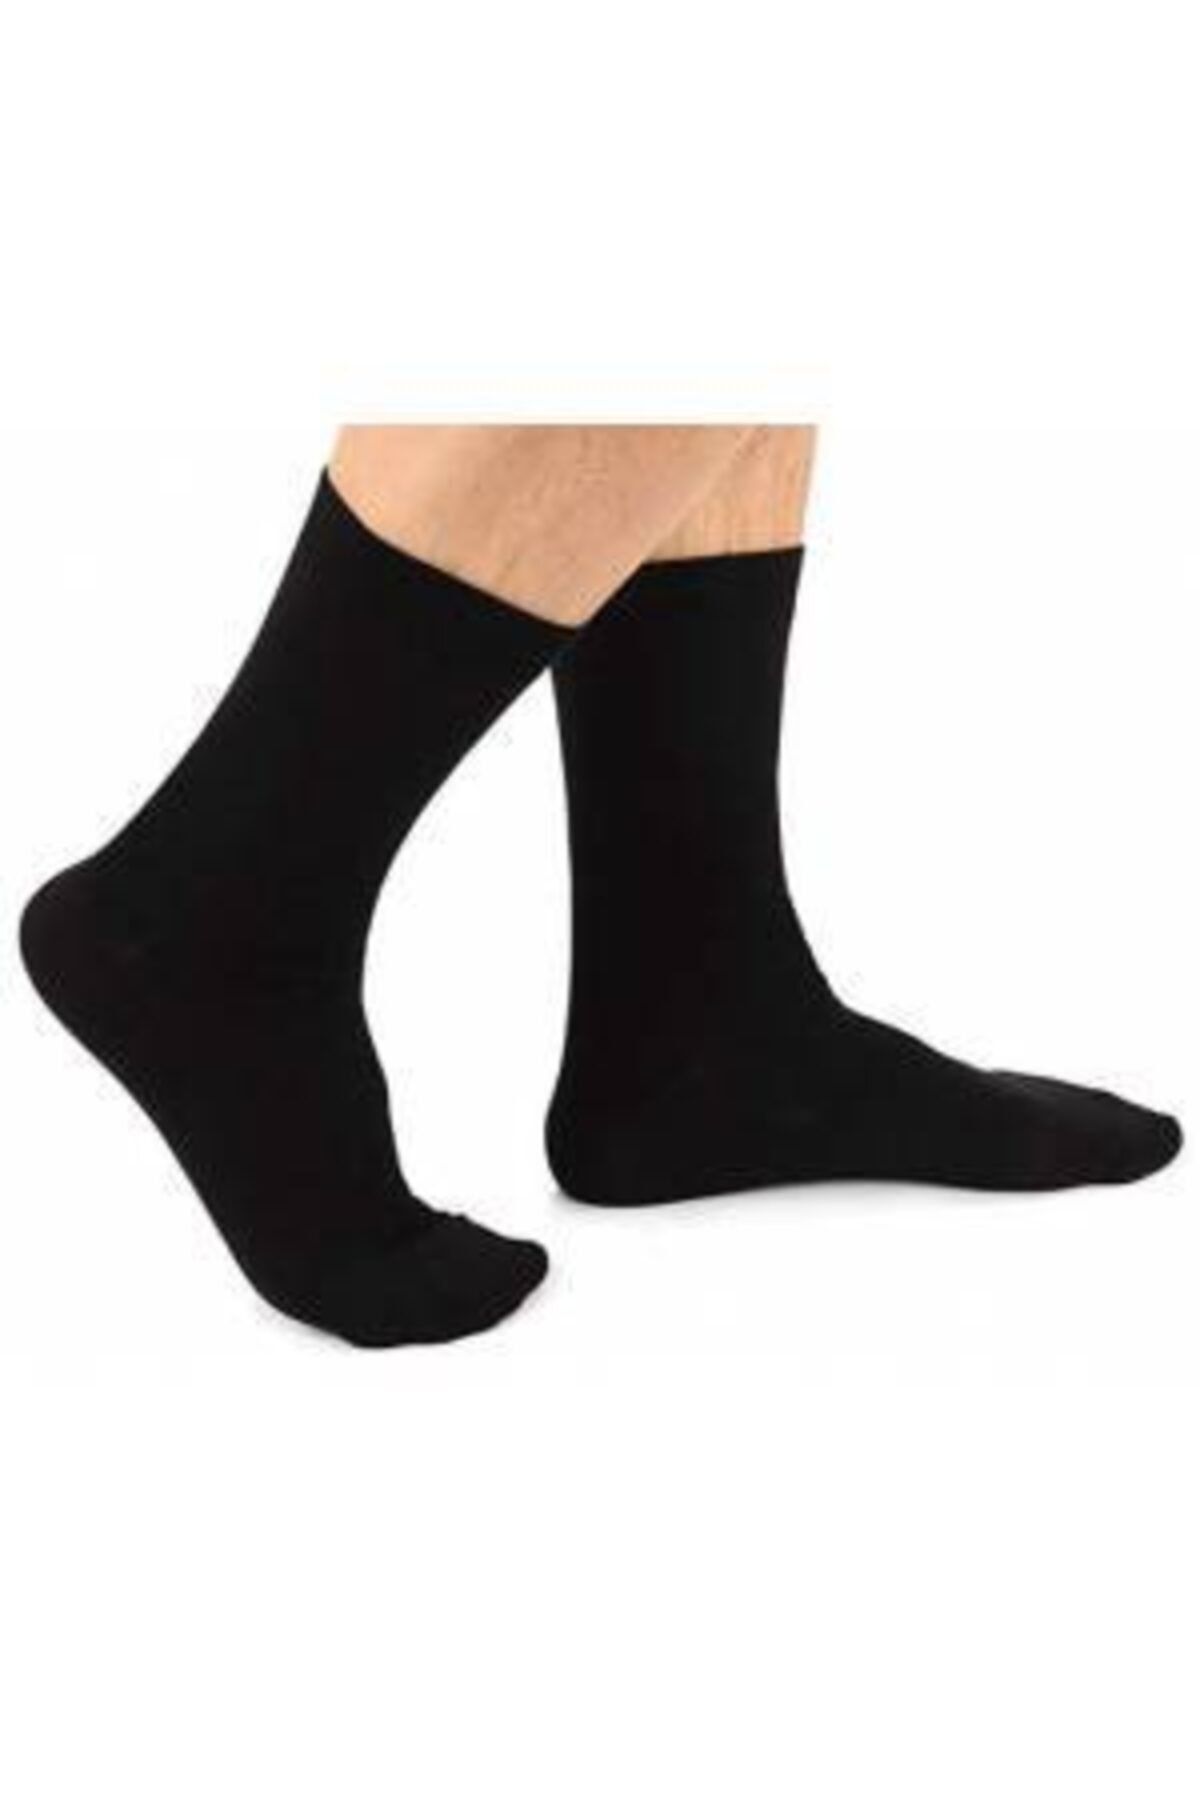 TEKMAN Damlaca 12 Çift Ekonomik Siyah Pamuklu Erkek Mevsimlik Çorap 1 Düzine Çorap